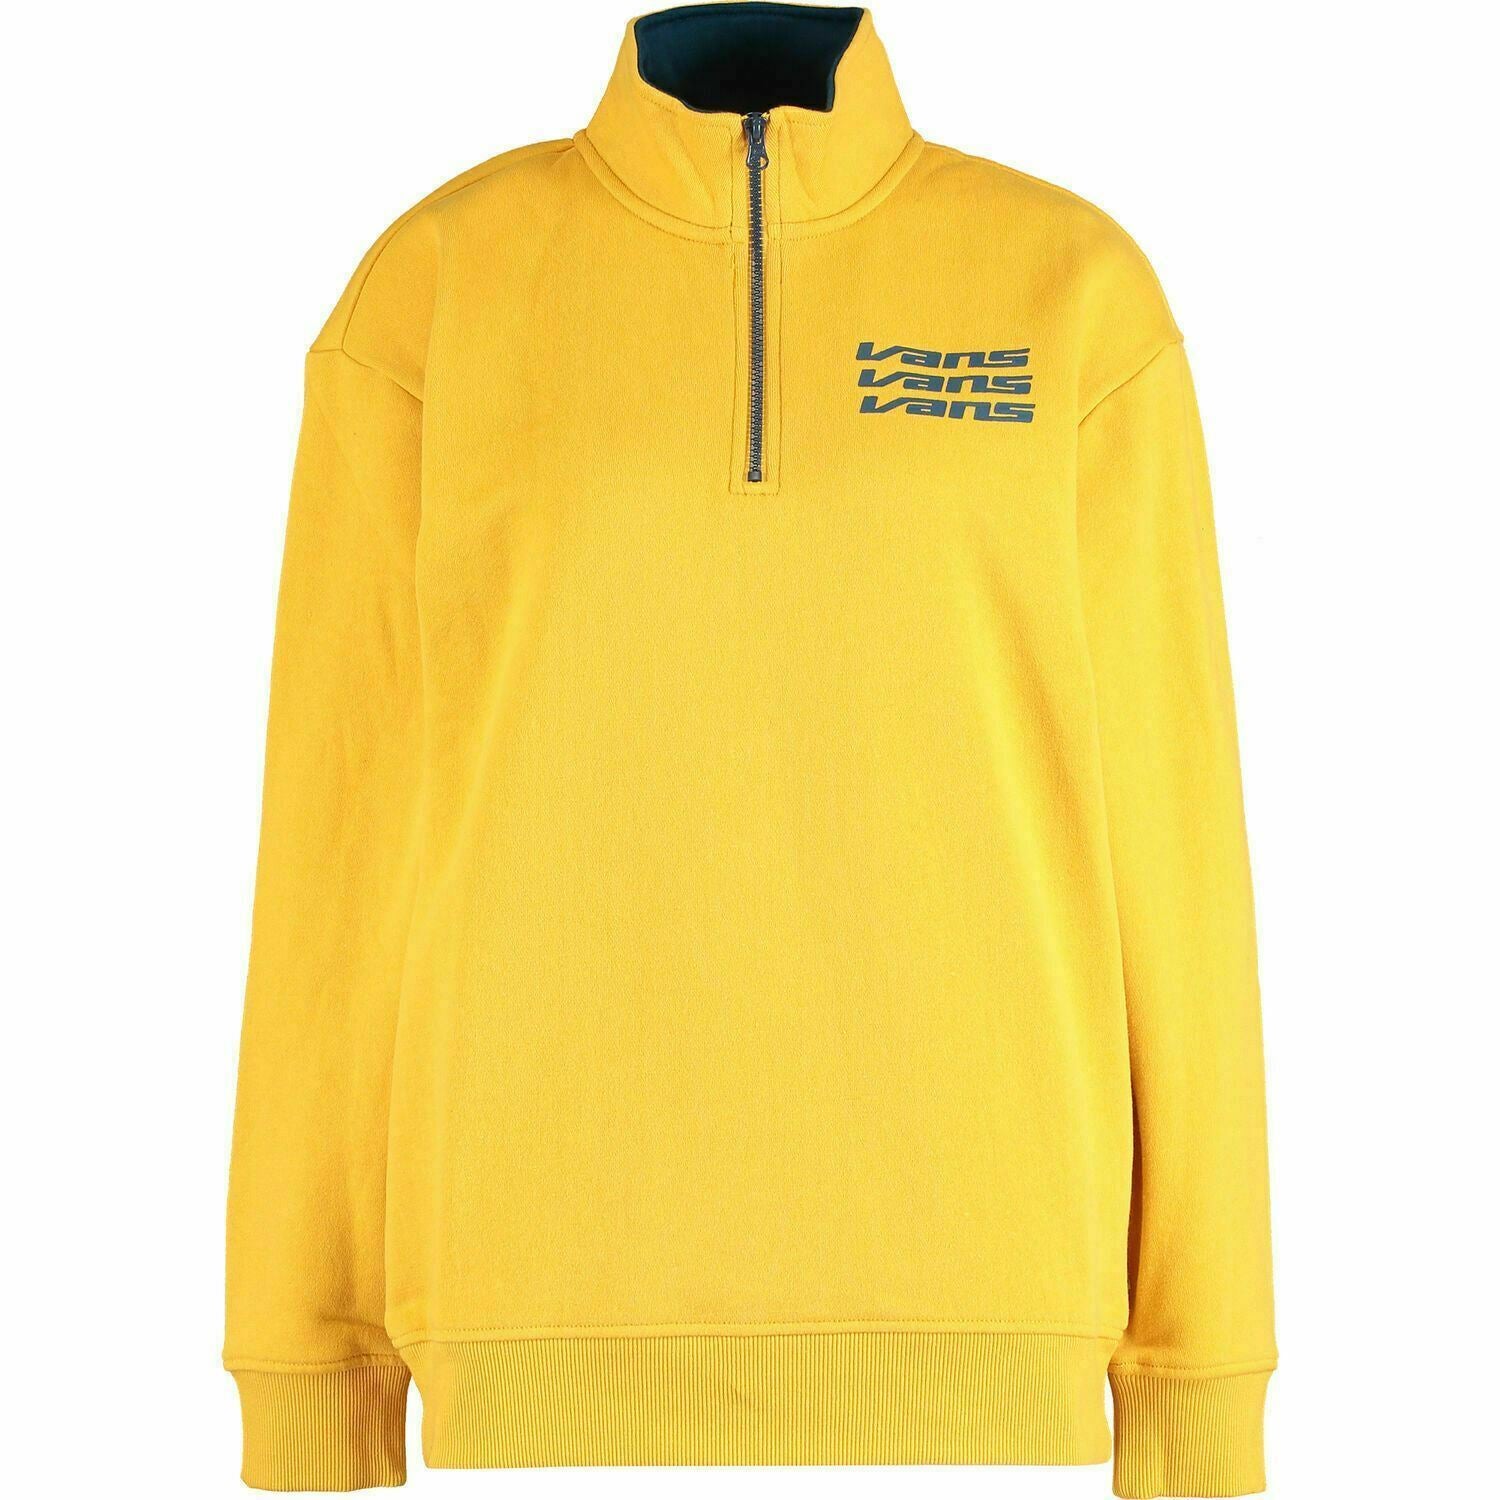 VANS Women's Sign It Mock Zip Crew Sweatshirt / Jumper, Yellow, size XS